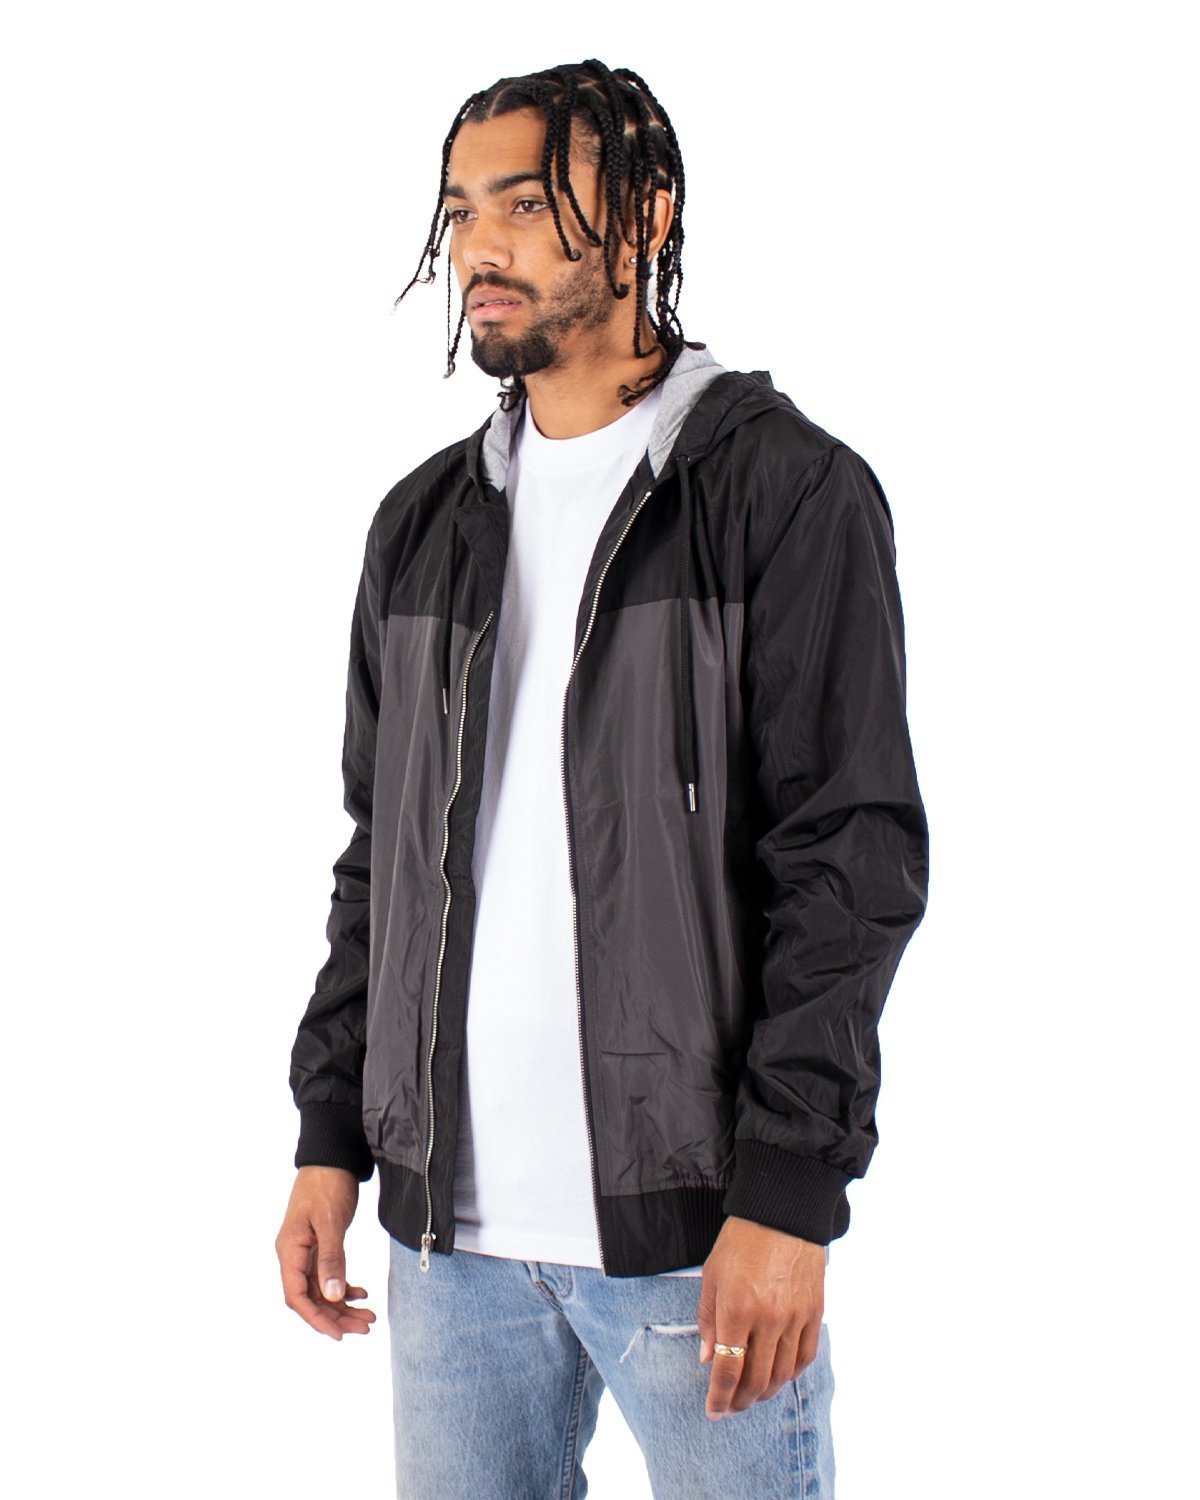 Black Windbreaker Jacket | Black Camo Windbreaker | Stay Wear S